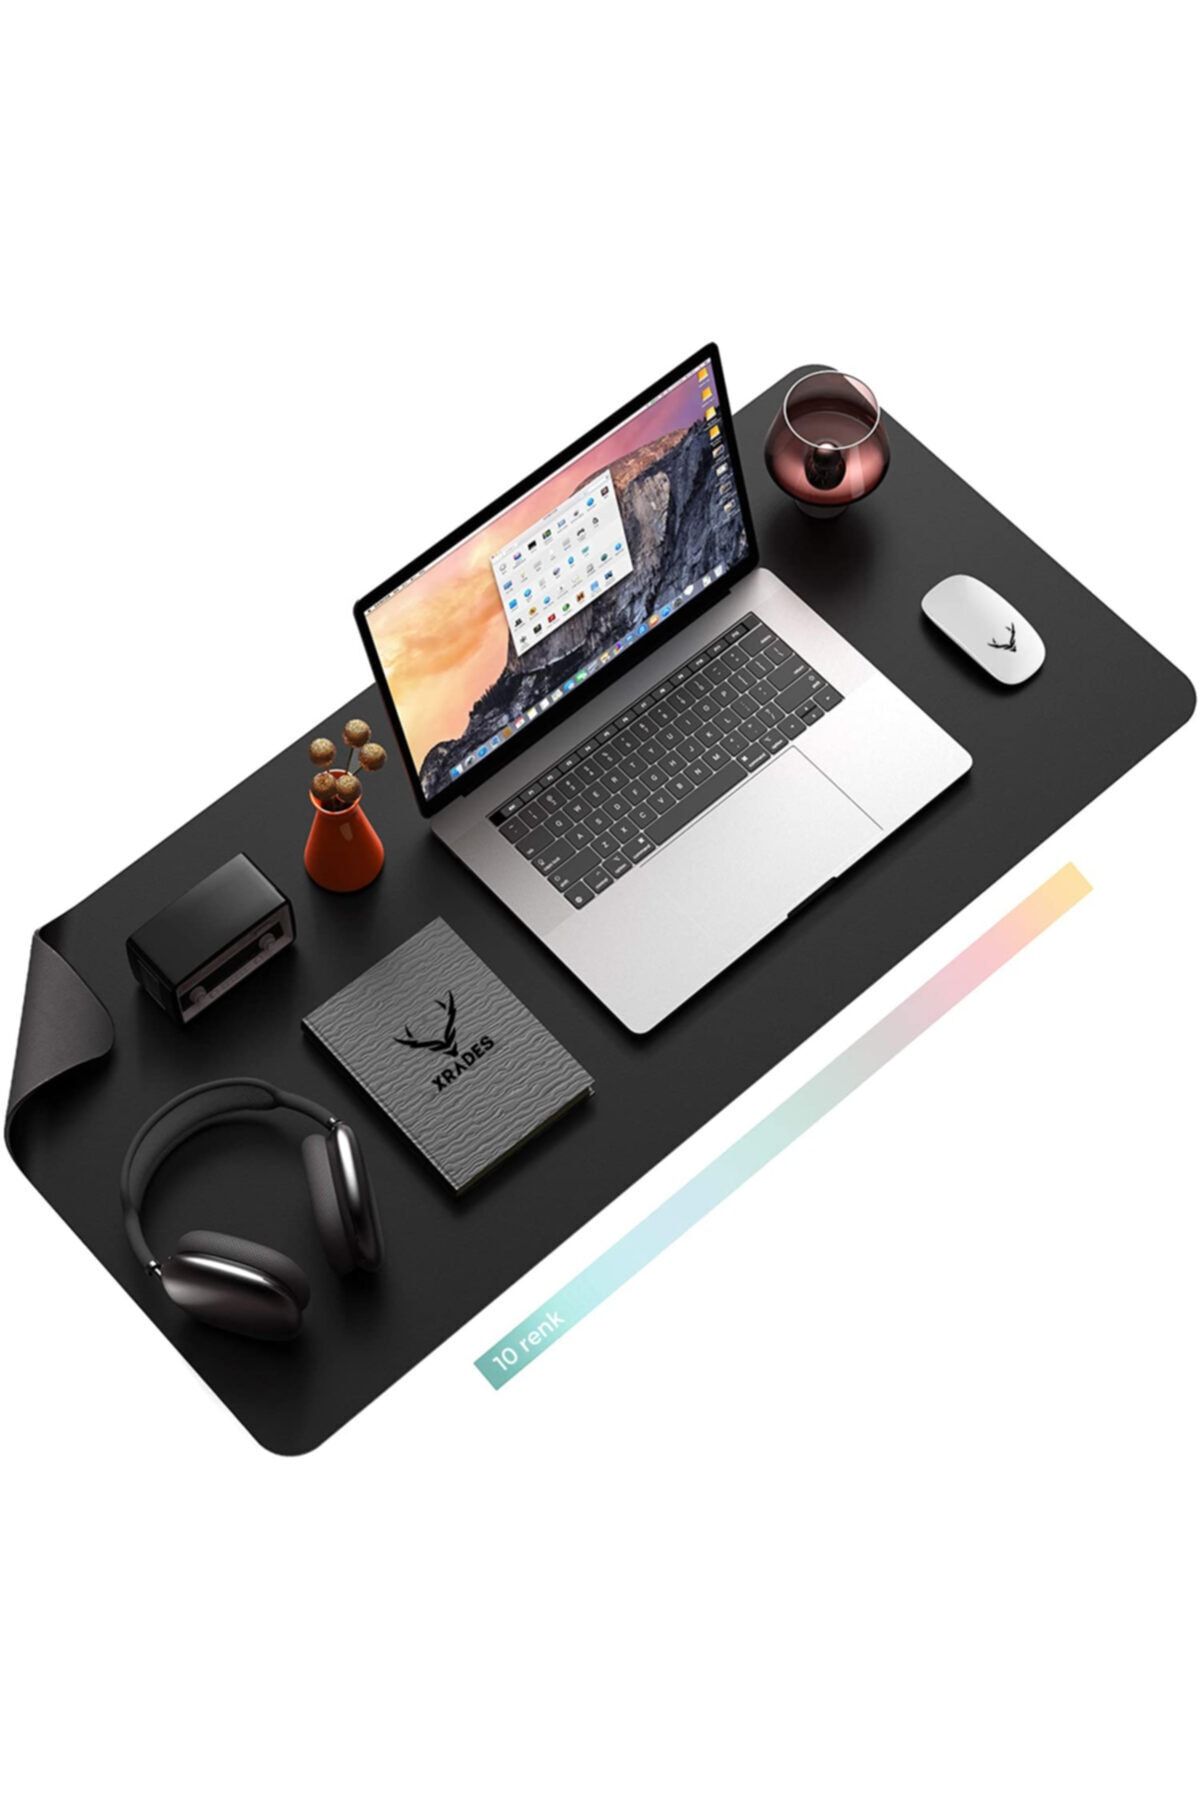 Xrades Deri Mousepad Laptop Bilgisayar İçin Geniş Gamings Masa Matı Deri Mouse Pad 80x40 cm Siyah